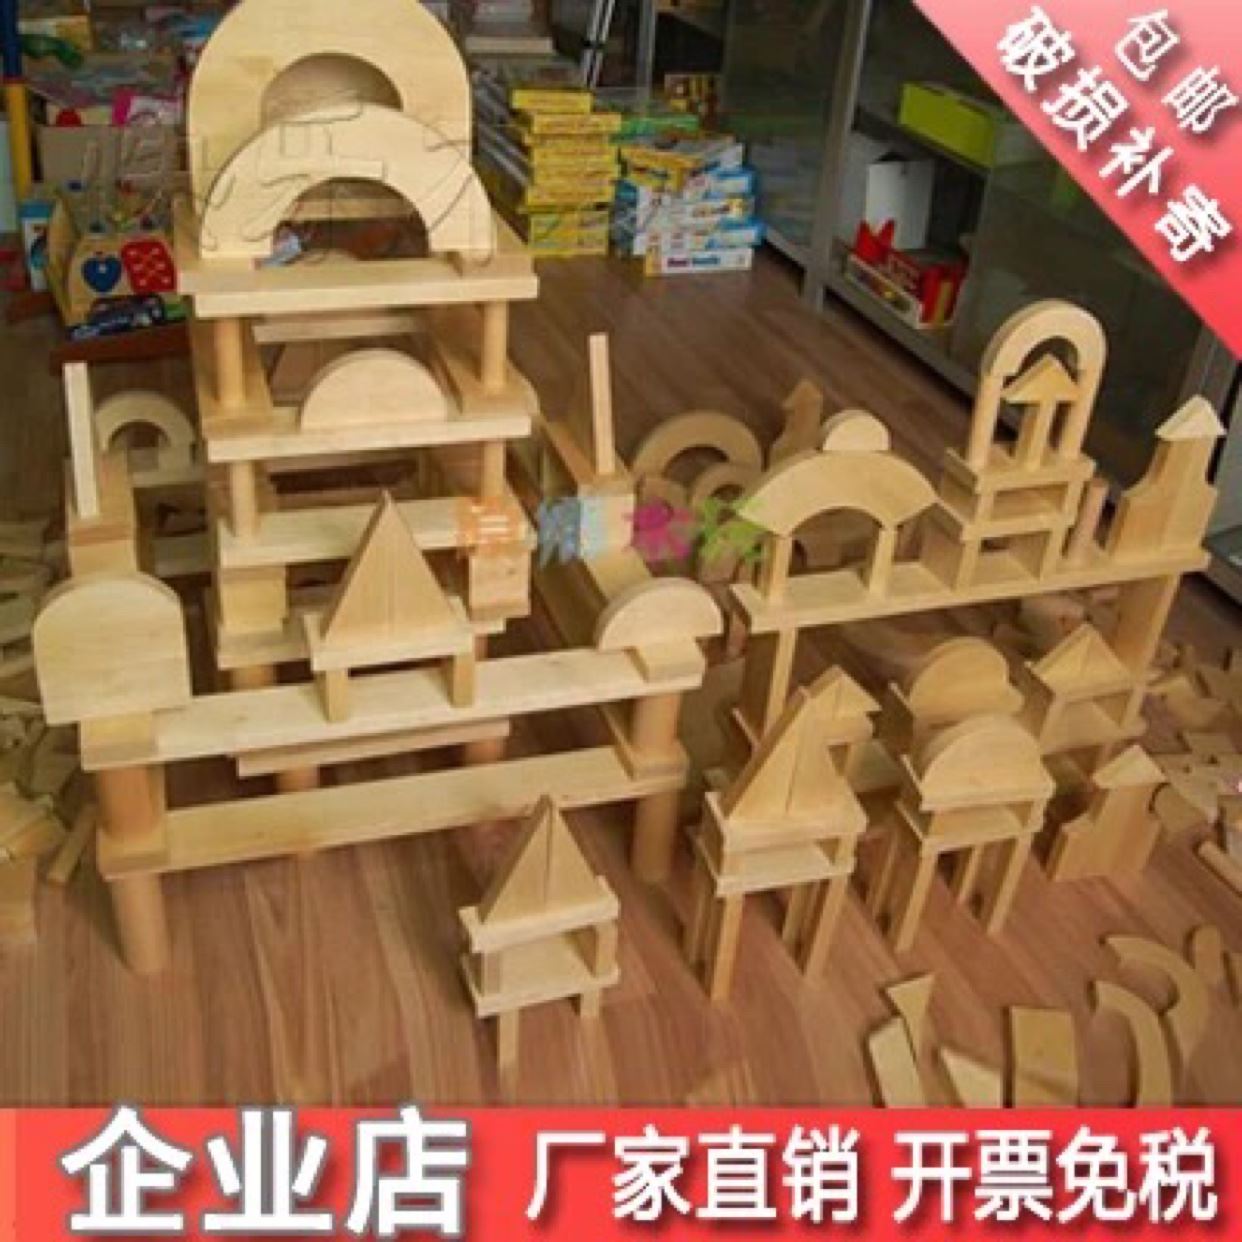 幼儿园积木大型搭建玩具实木木质木头建构区材料城堡大块原木积木